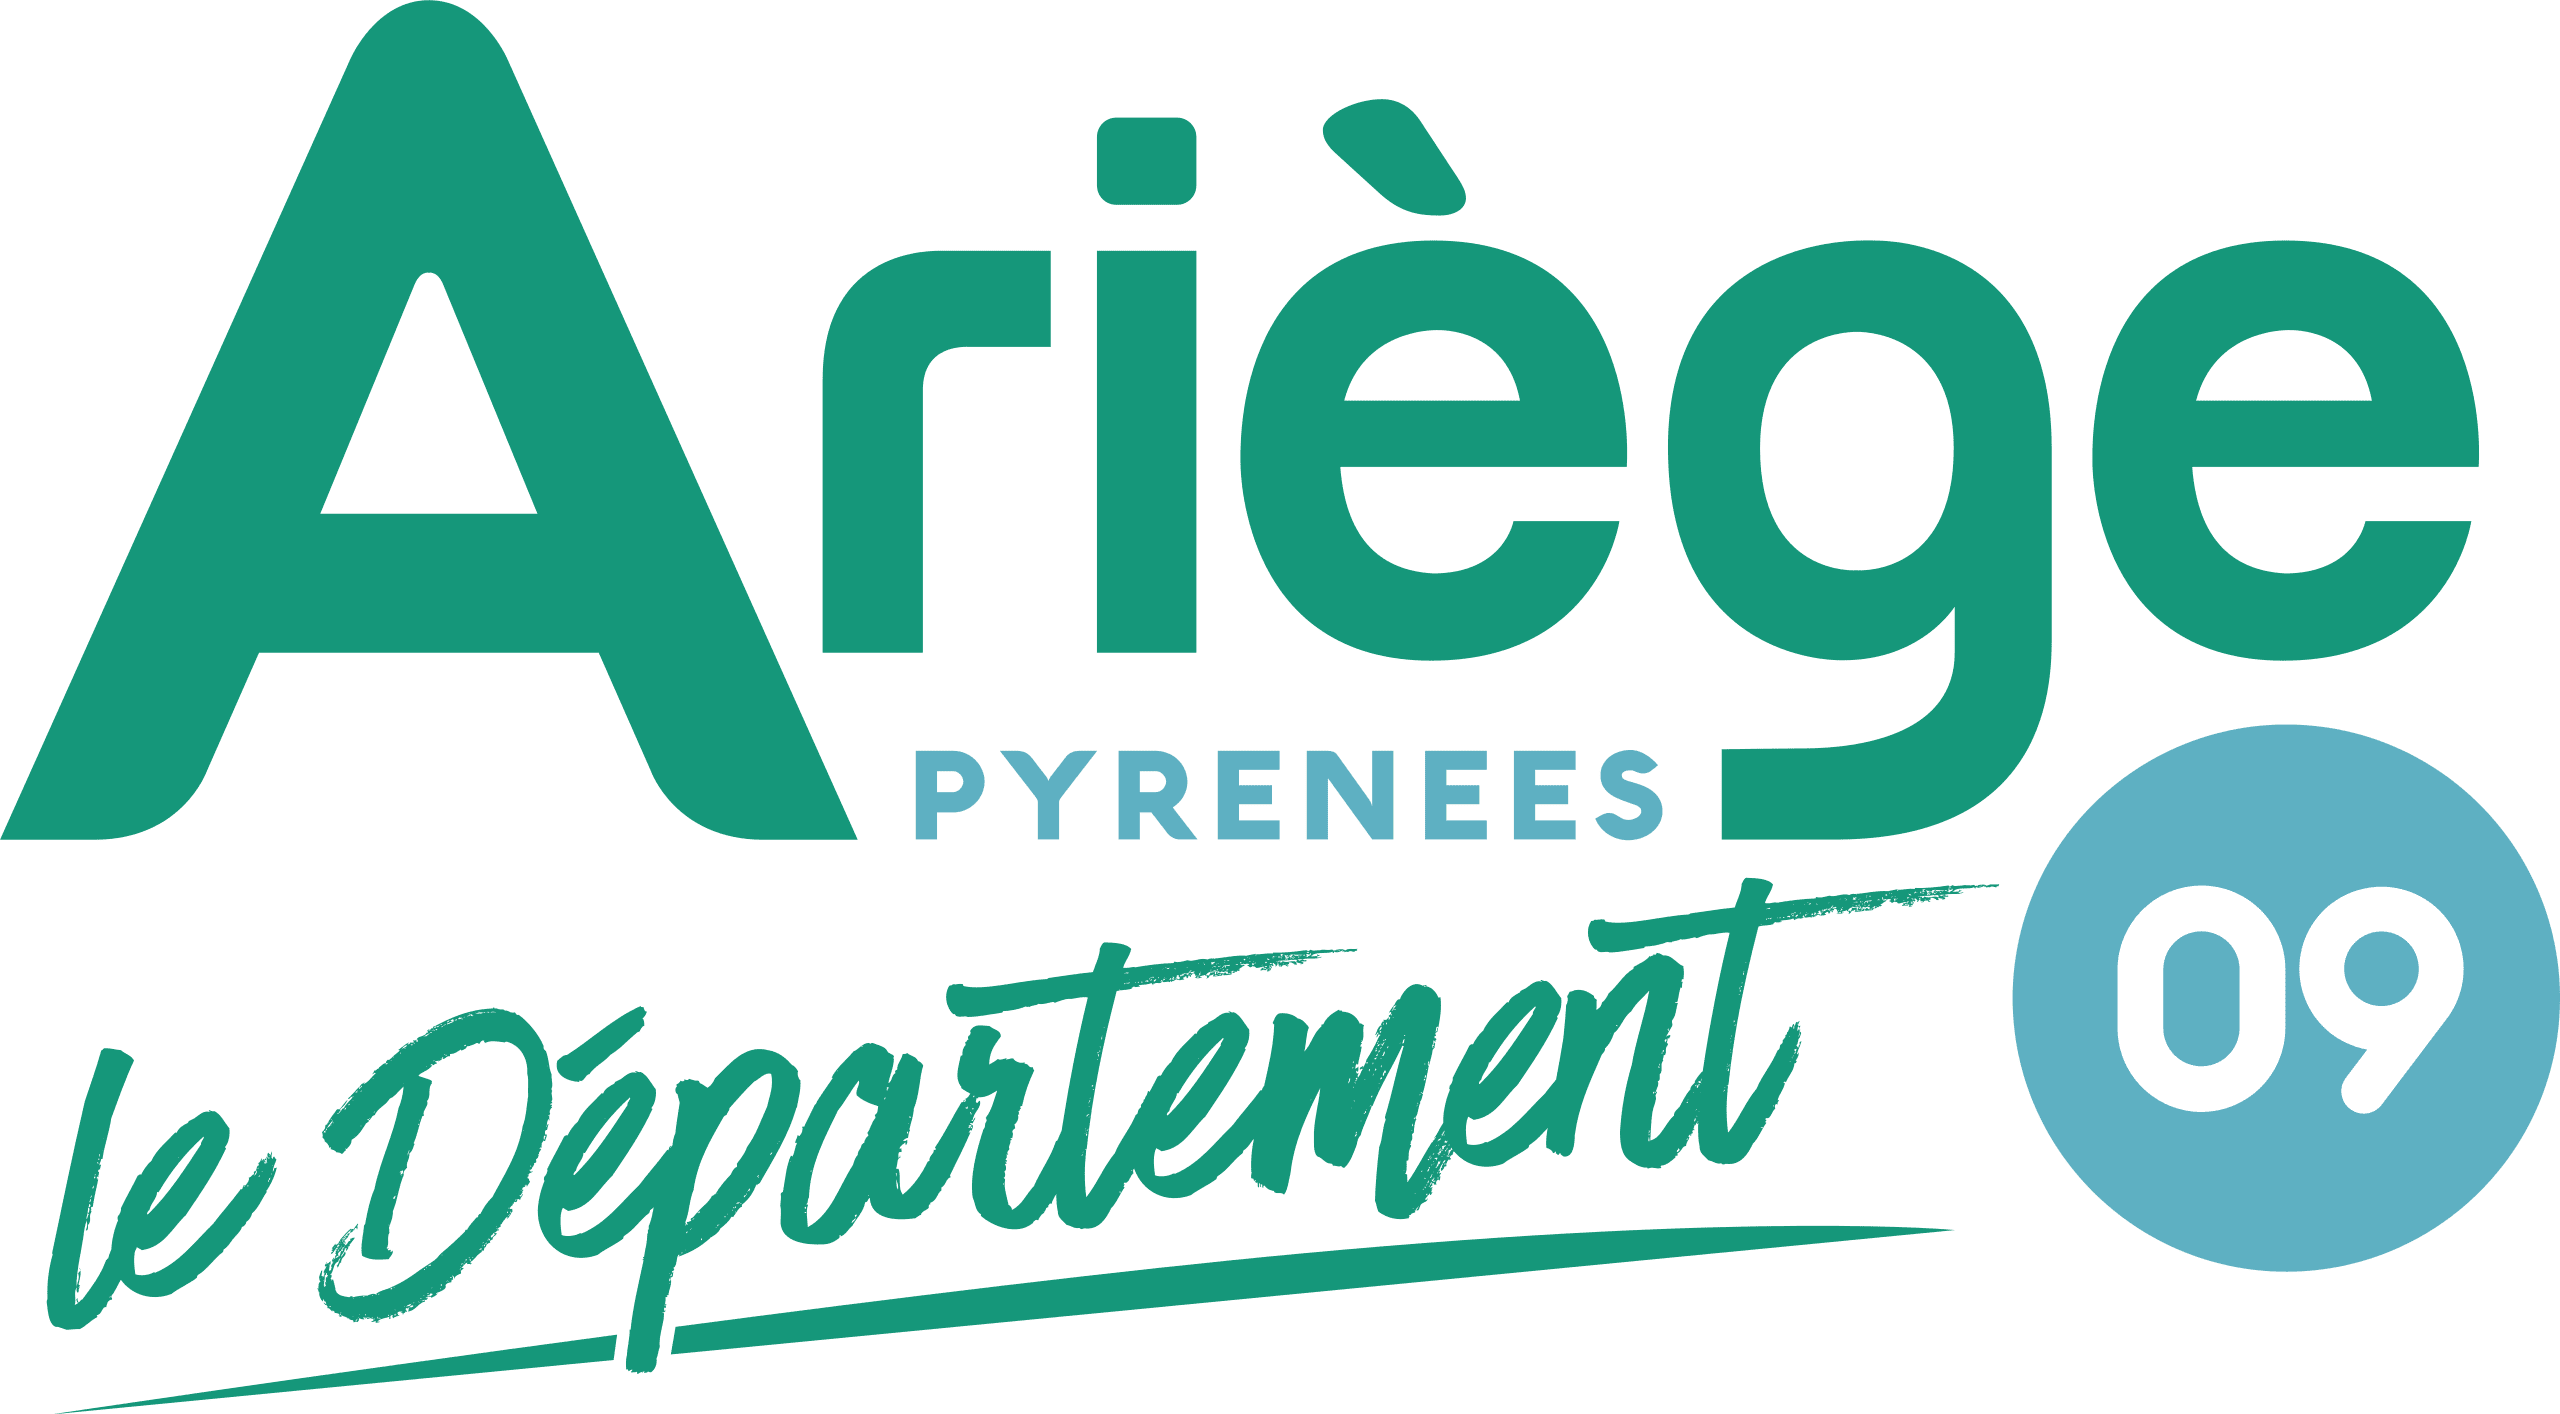 Département Ariège